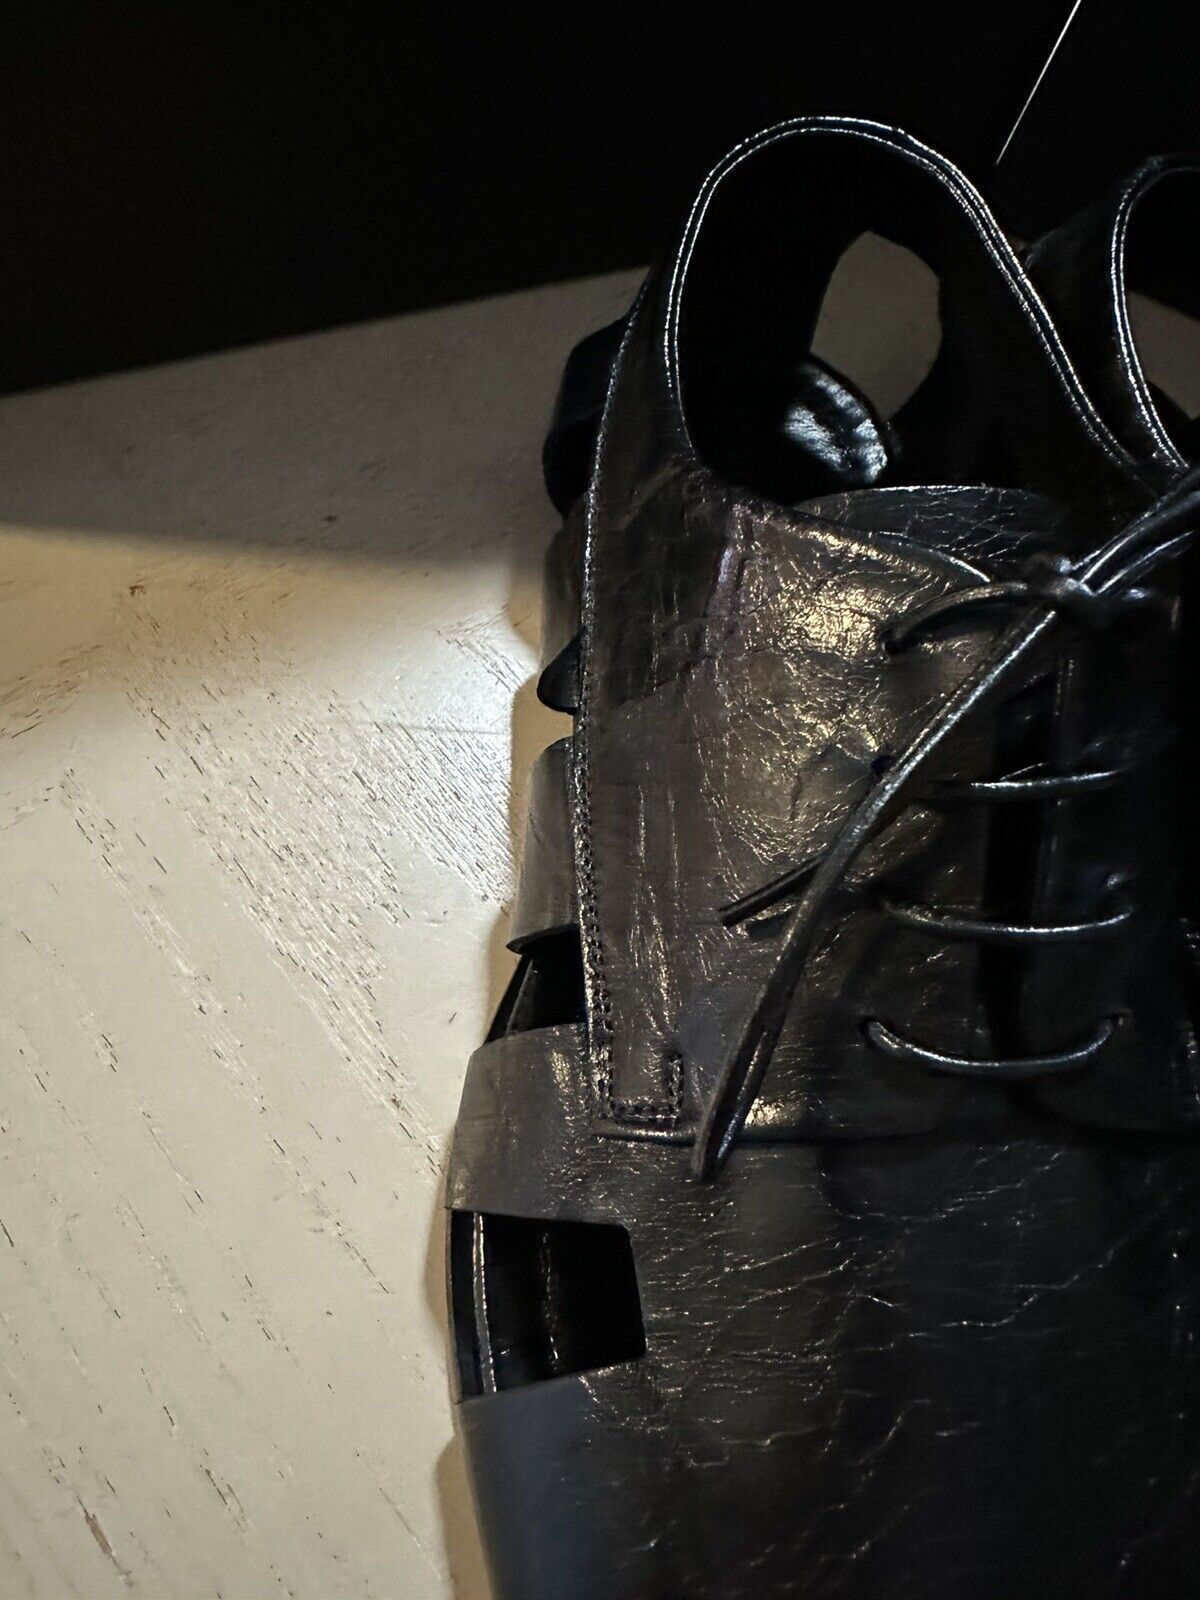 NIB $890 Bottega Veneta Men Light Lux Leather Sandal Shoes Black 10 US/43